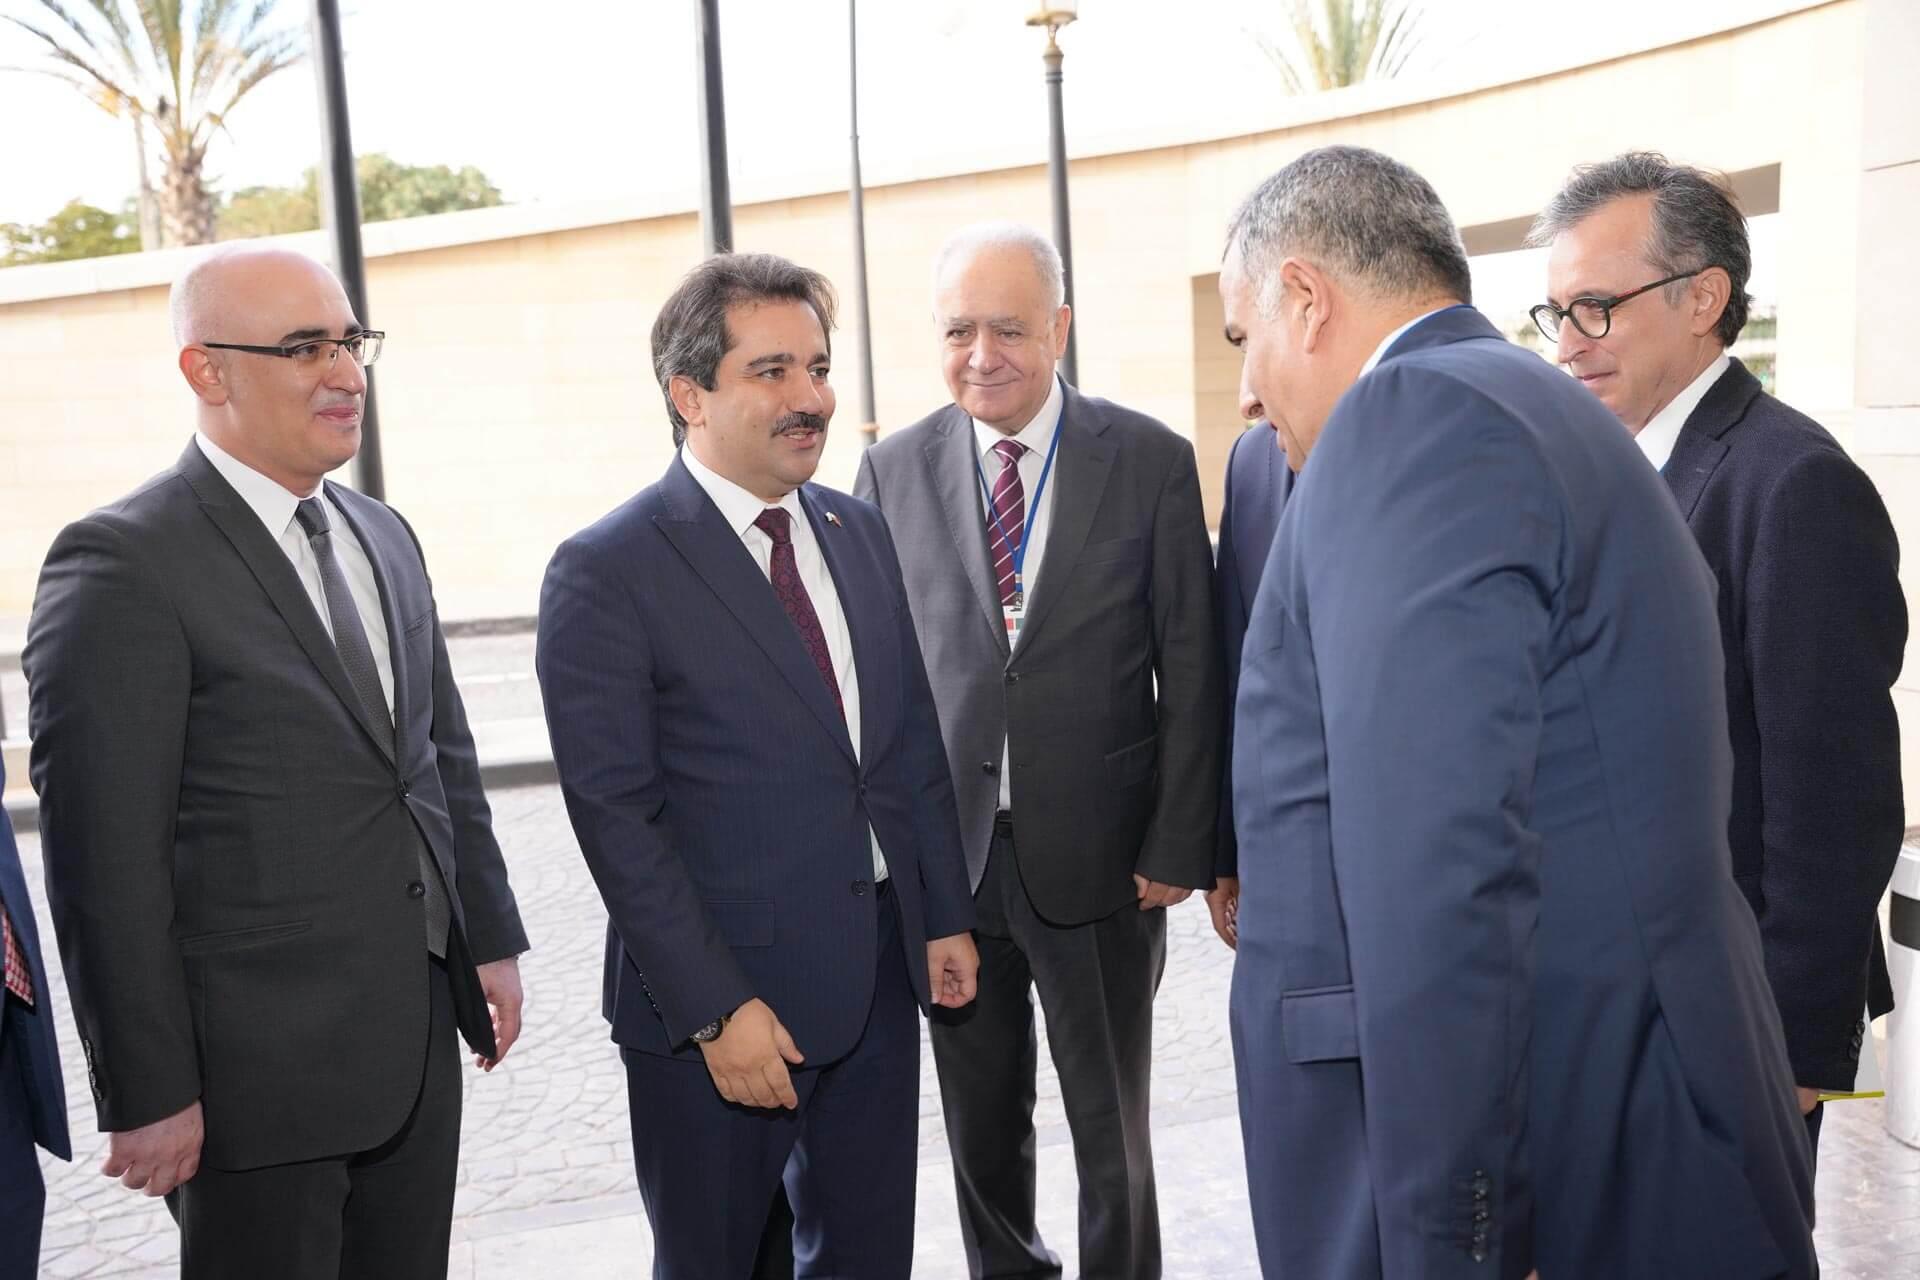 Bienvenue à la réunion par notre ambassadeur M. Muhammed Mücahit Küçükyılmaz